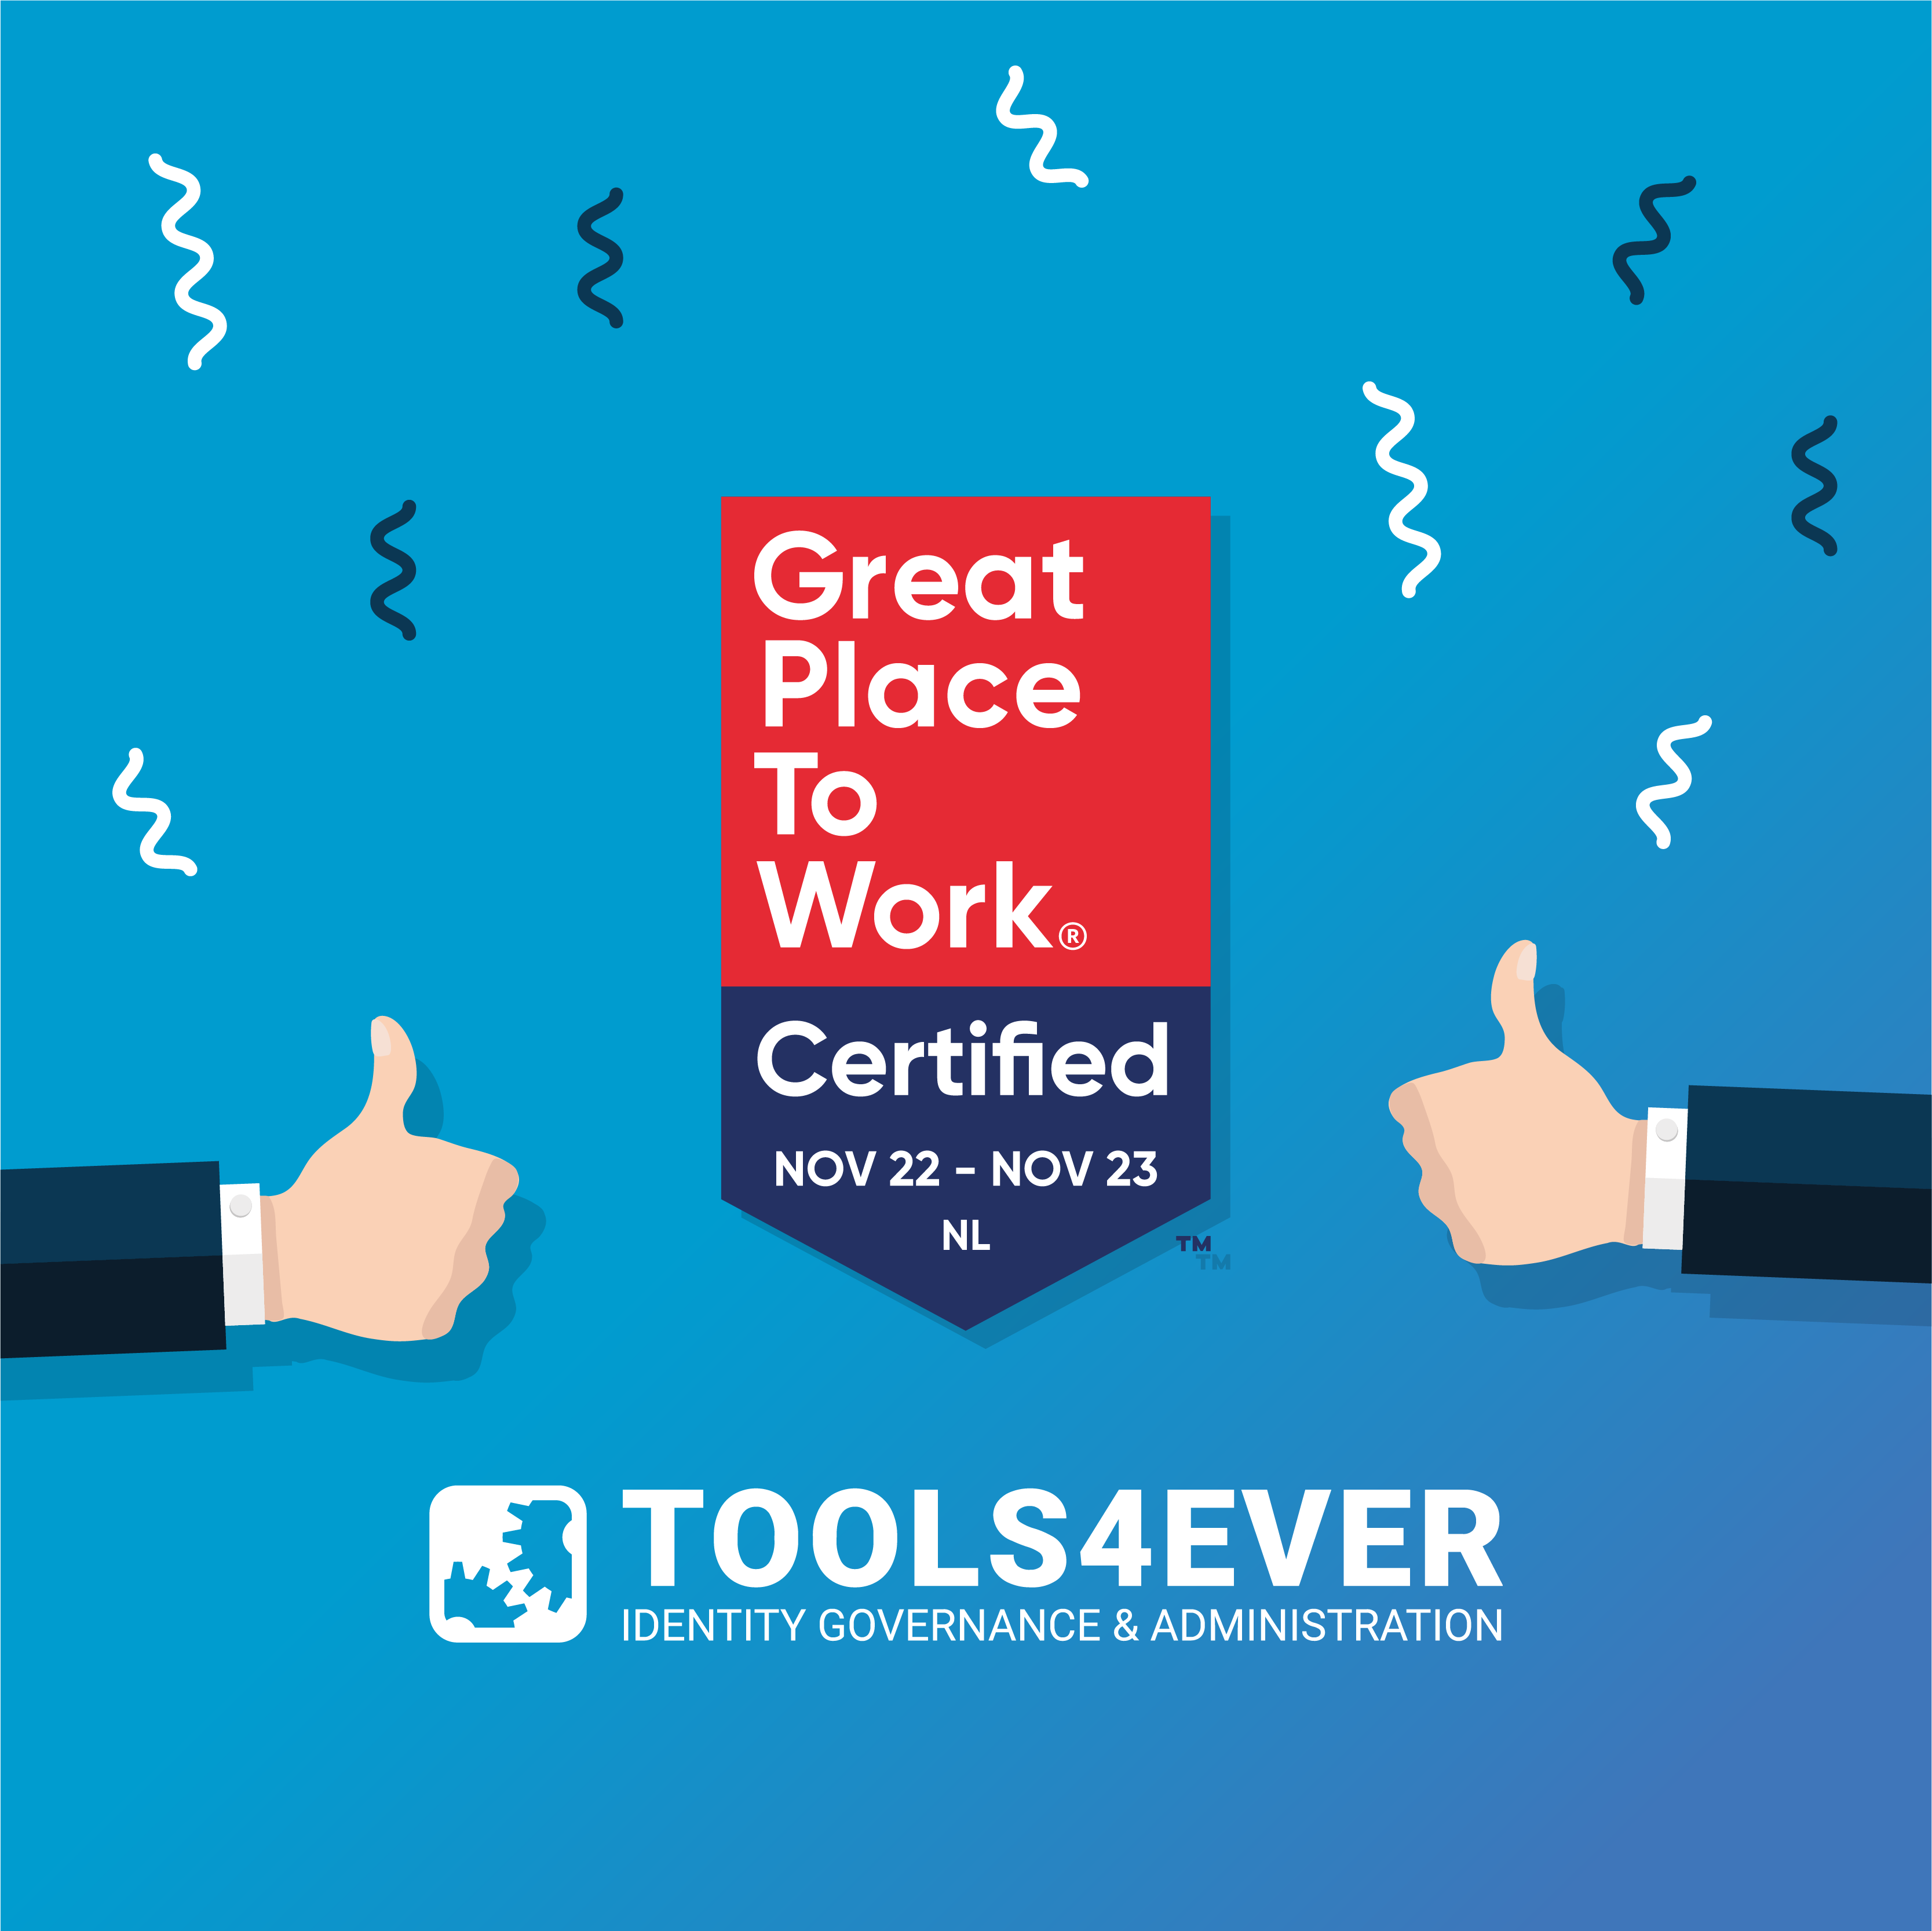 Tools4ever is gecertificeerd als Great Place to Work